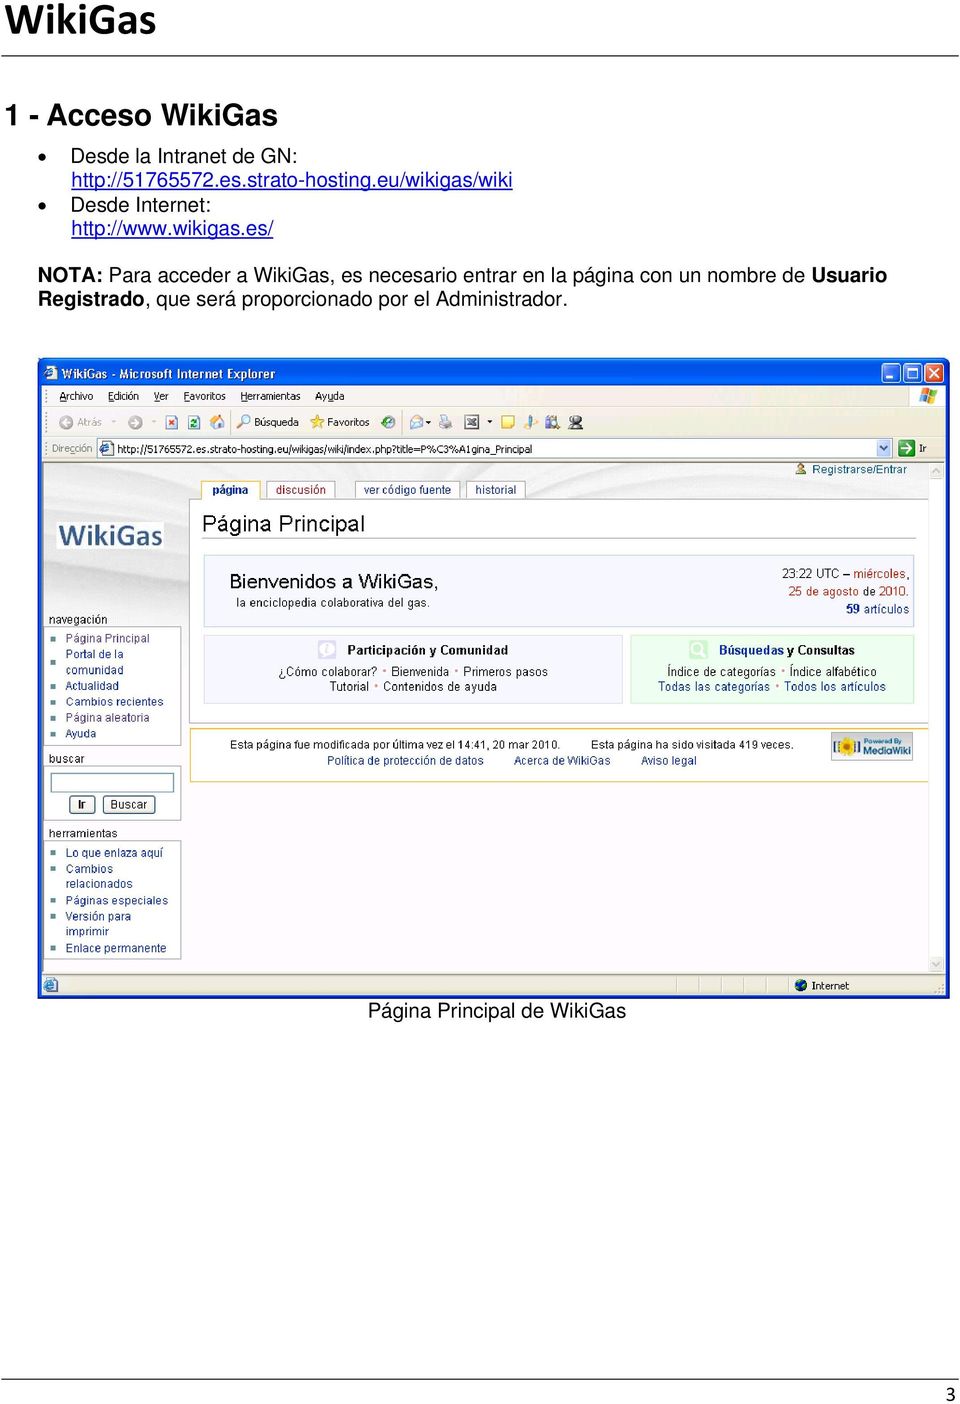 wiki Desde Internet: http://www.wikigas.